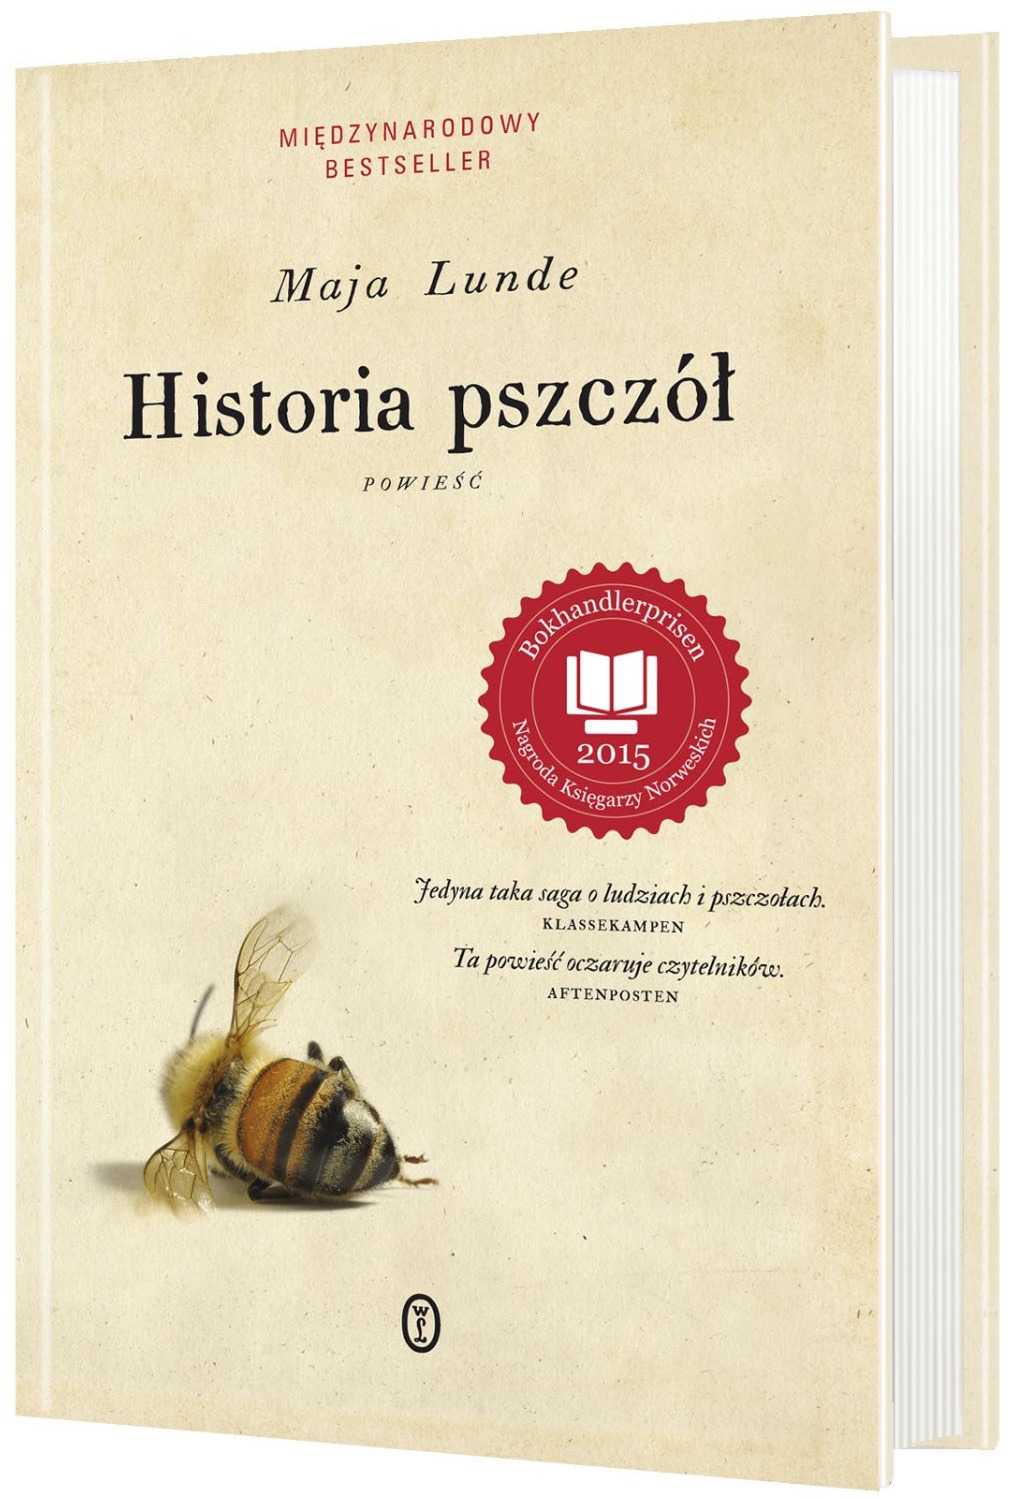 Maja Lunde, „Historia pszczół” – okładka (źródło: materiały prasowe)